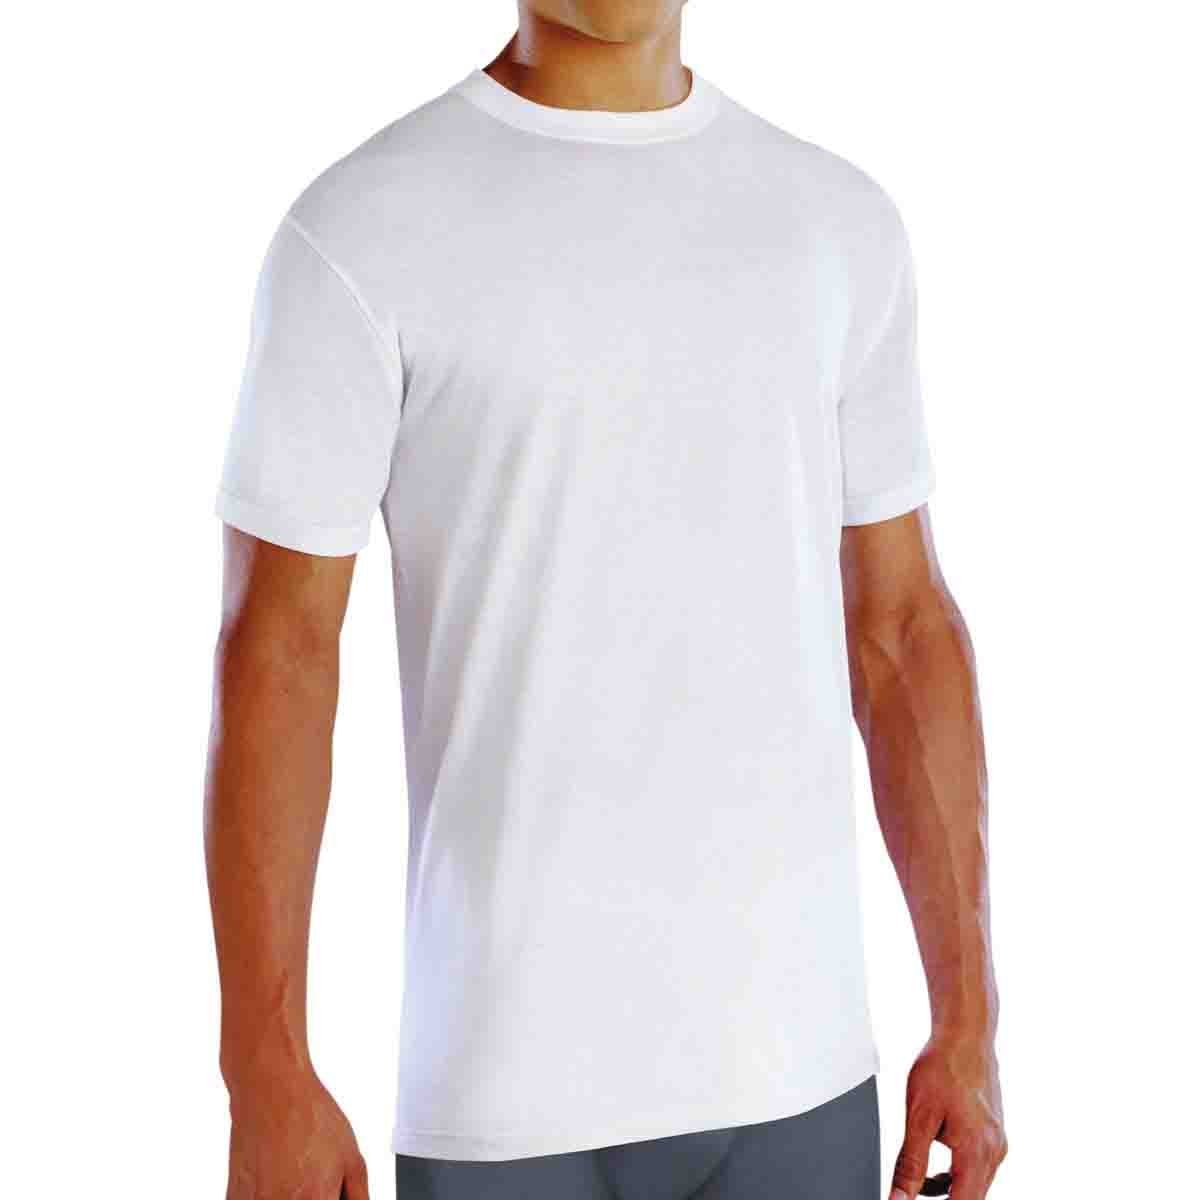 Paquete de 4 camisetas para hombre. Mezcla de algodón súper suave, cuello  redondo, ajuste ajustado. Camisetas para chicos. Fabricado en Estados Unidos